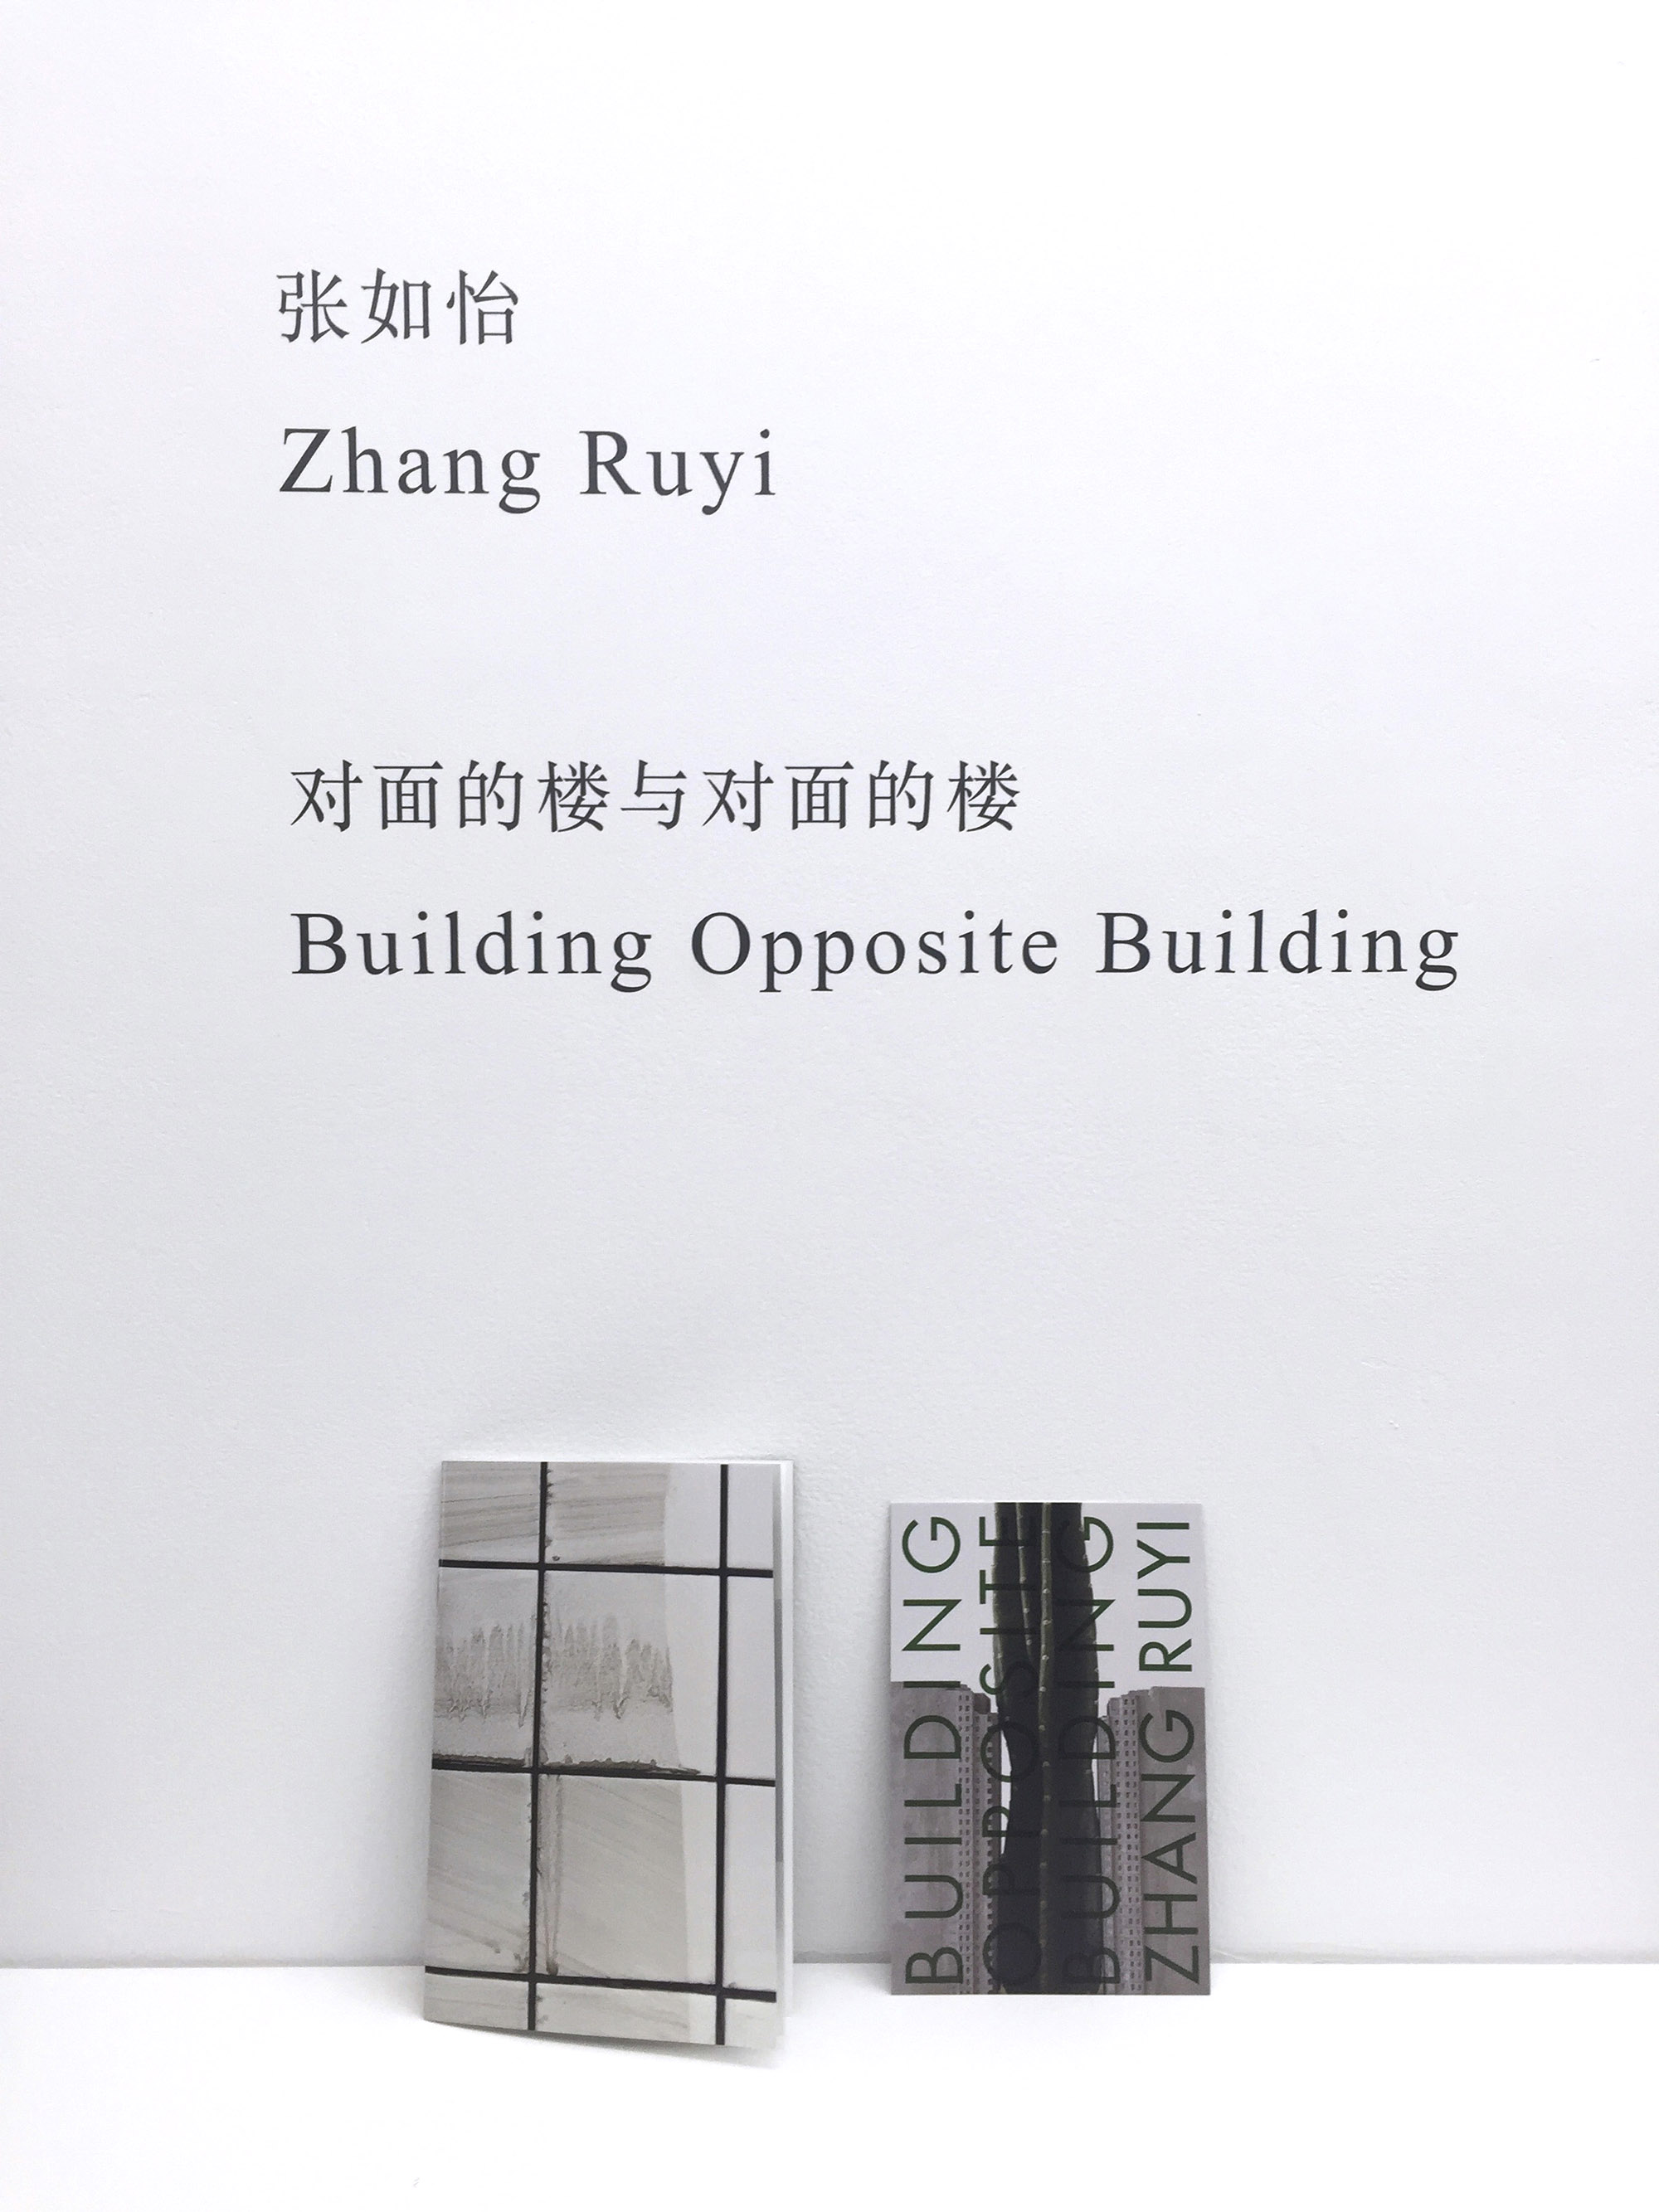 Building Opposite Building, Zhang Ruyi 张如怡, 2016